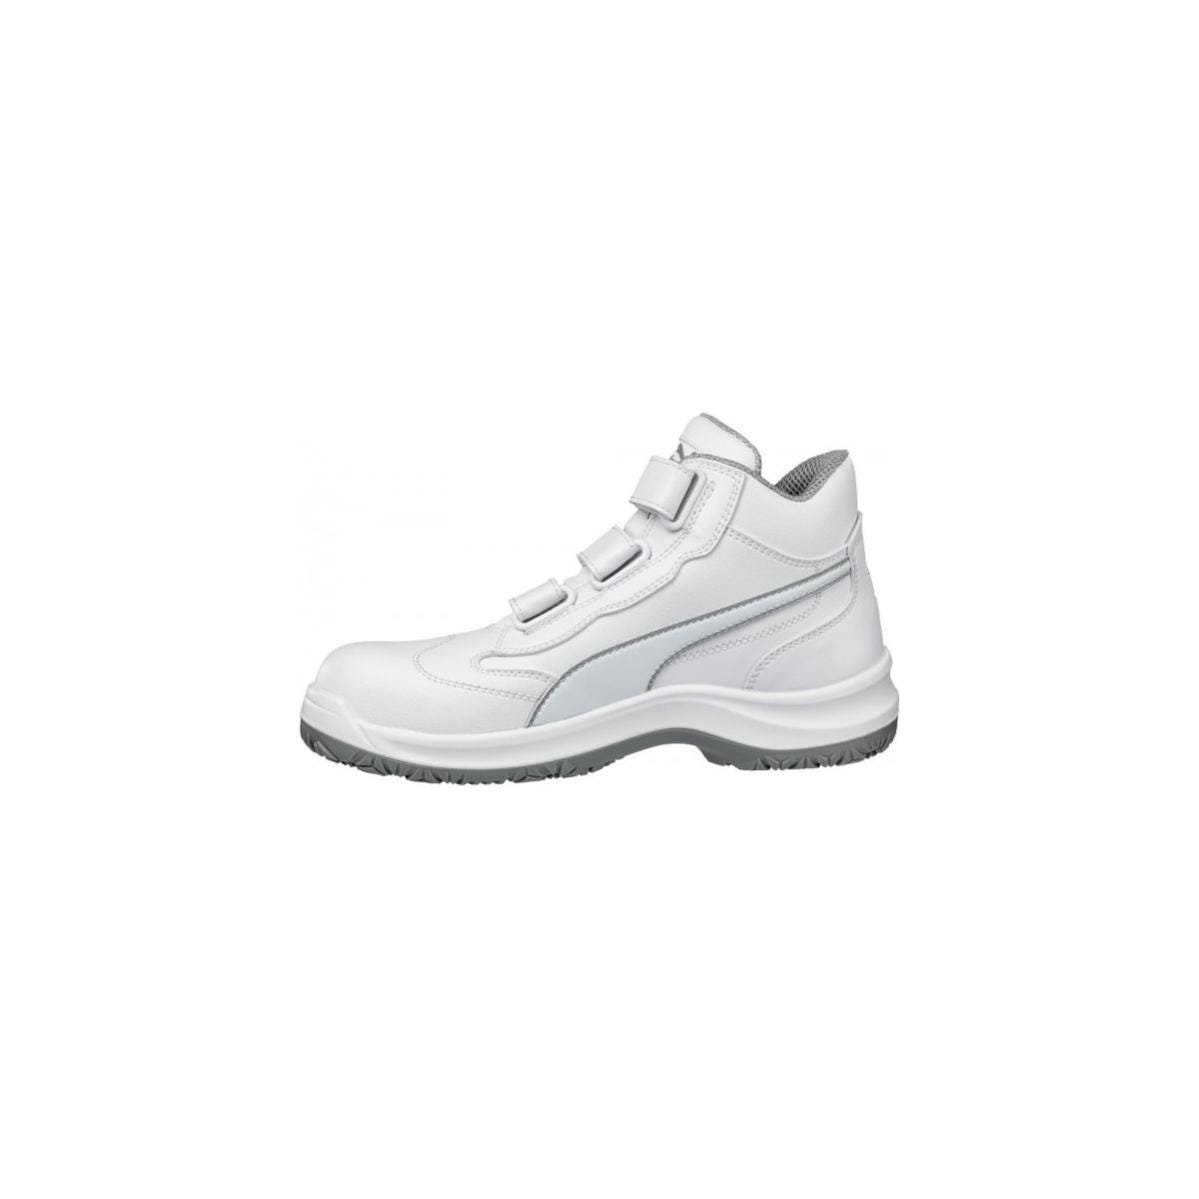 Chaussures de sécurité Absolute Mid S2 Blanc - Puma - Taille 38 4